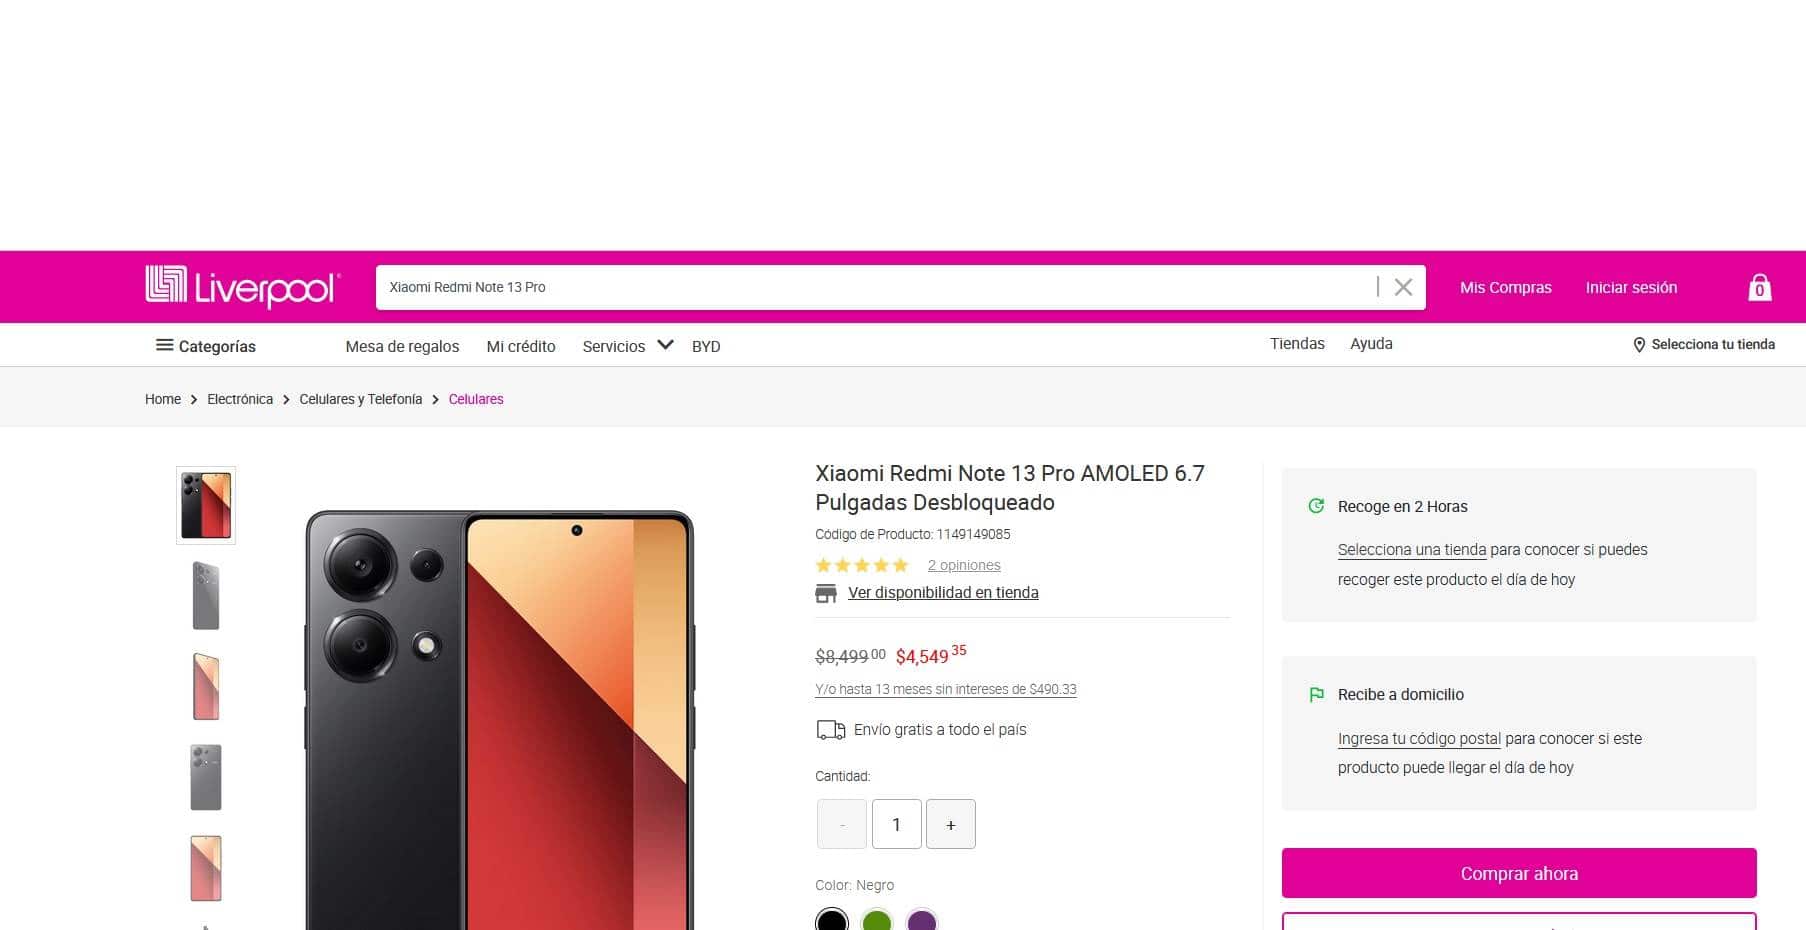 Precio del smartphone Xiaomi Redmi Note 13 Pro en la Venta Nocturna de Liverpool